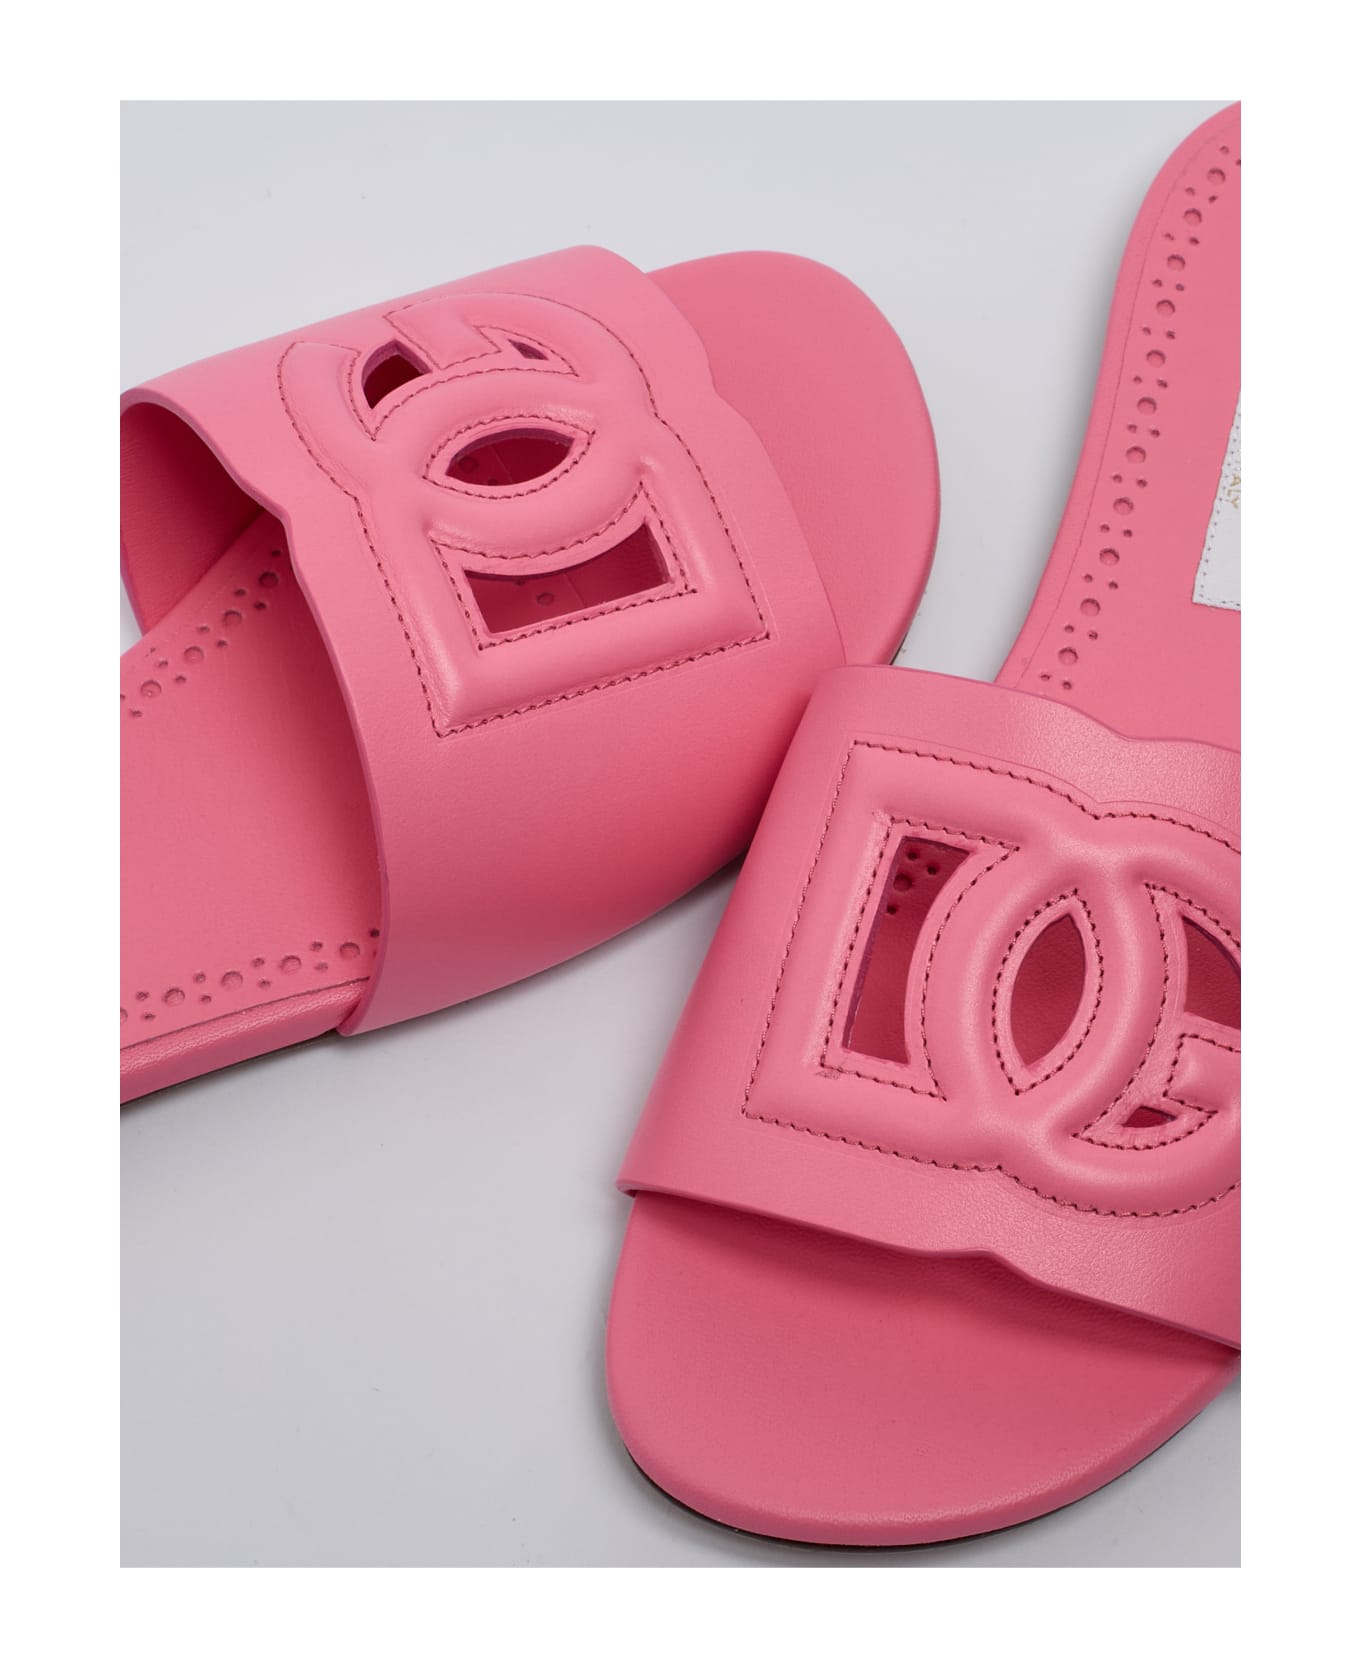 Dolce & Gabbana Slides Sandal - ROSA